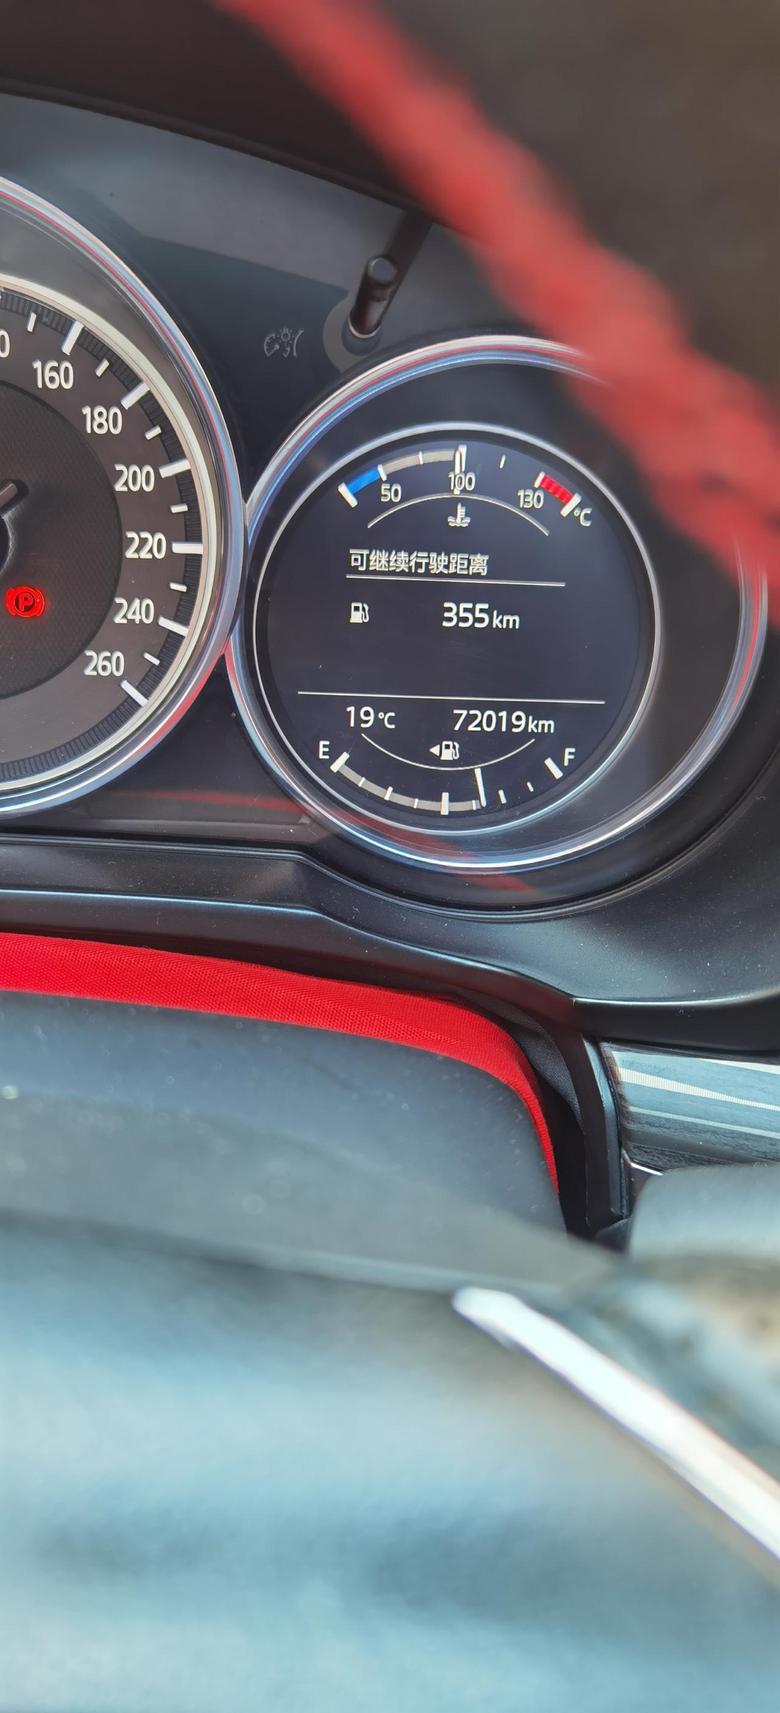 马自达cx5 我2019款-52.5四驱，今天发现水温表显示100℃，请车友看看自己的，我打电话问店里，说正常。有这样问题没有呀？